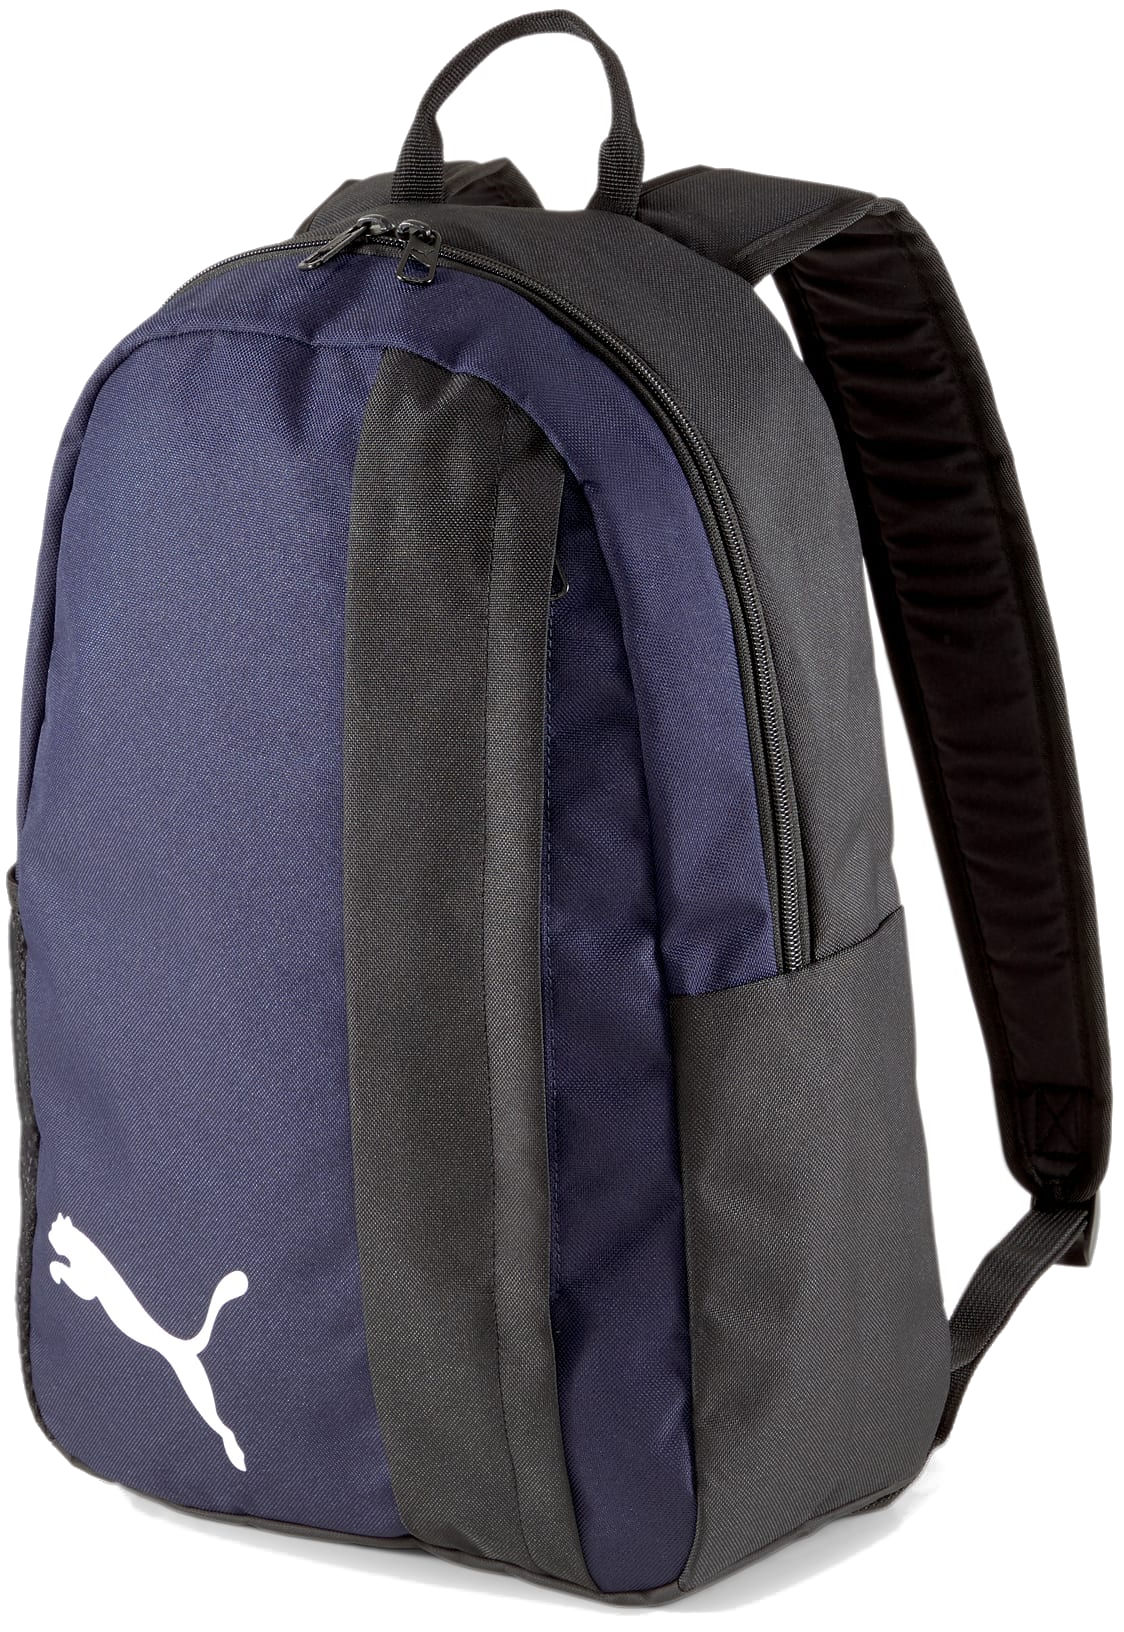 Plecak Puma teamGOAL 23 Backpack